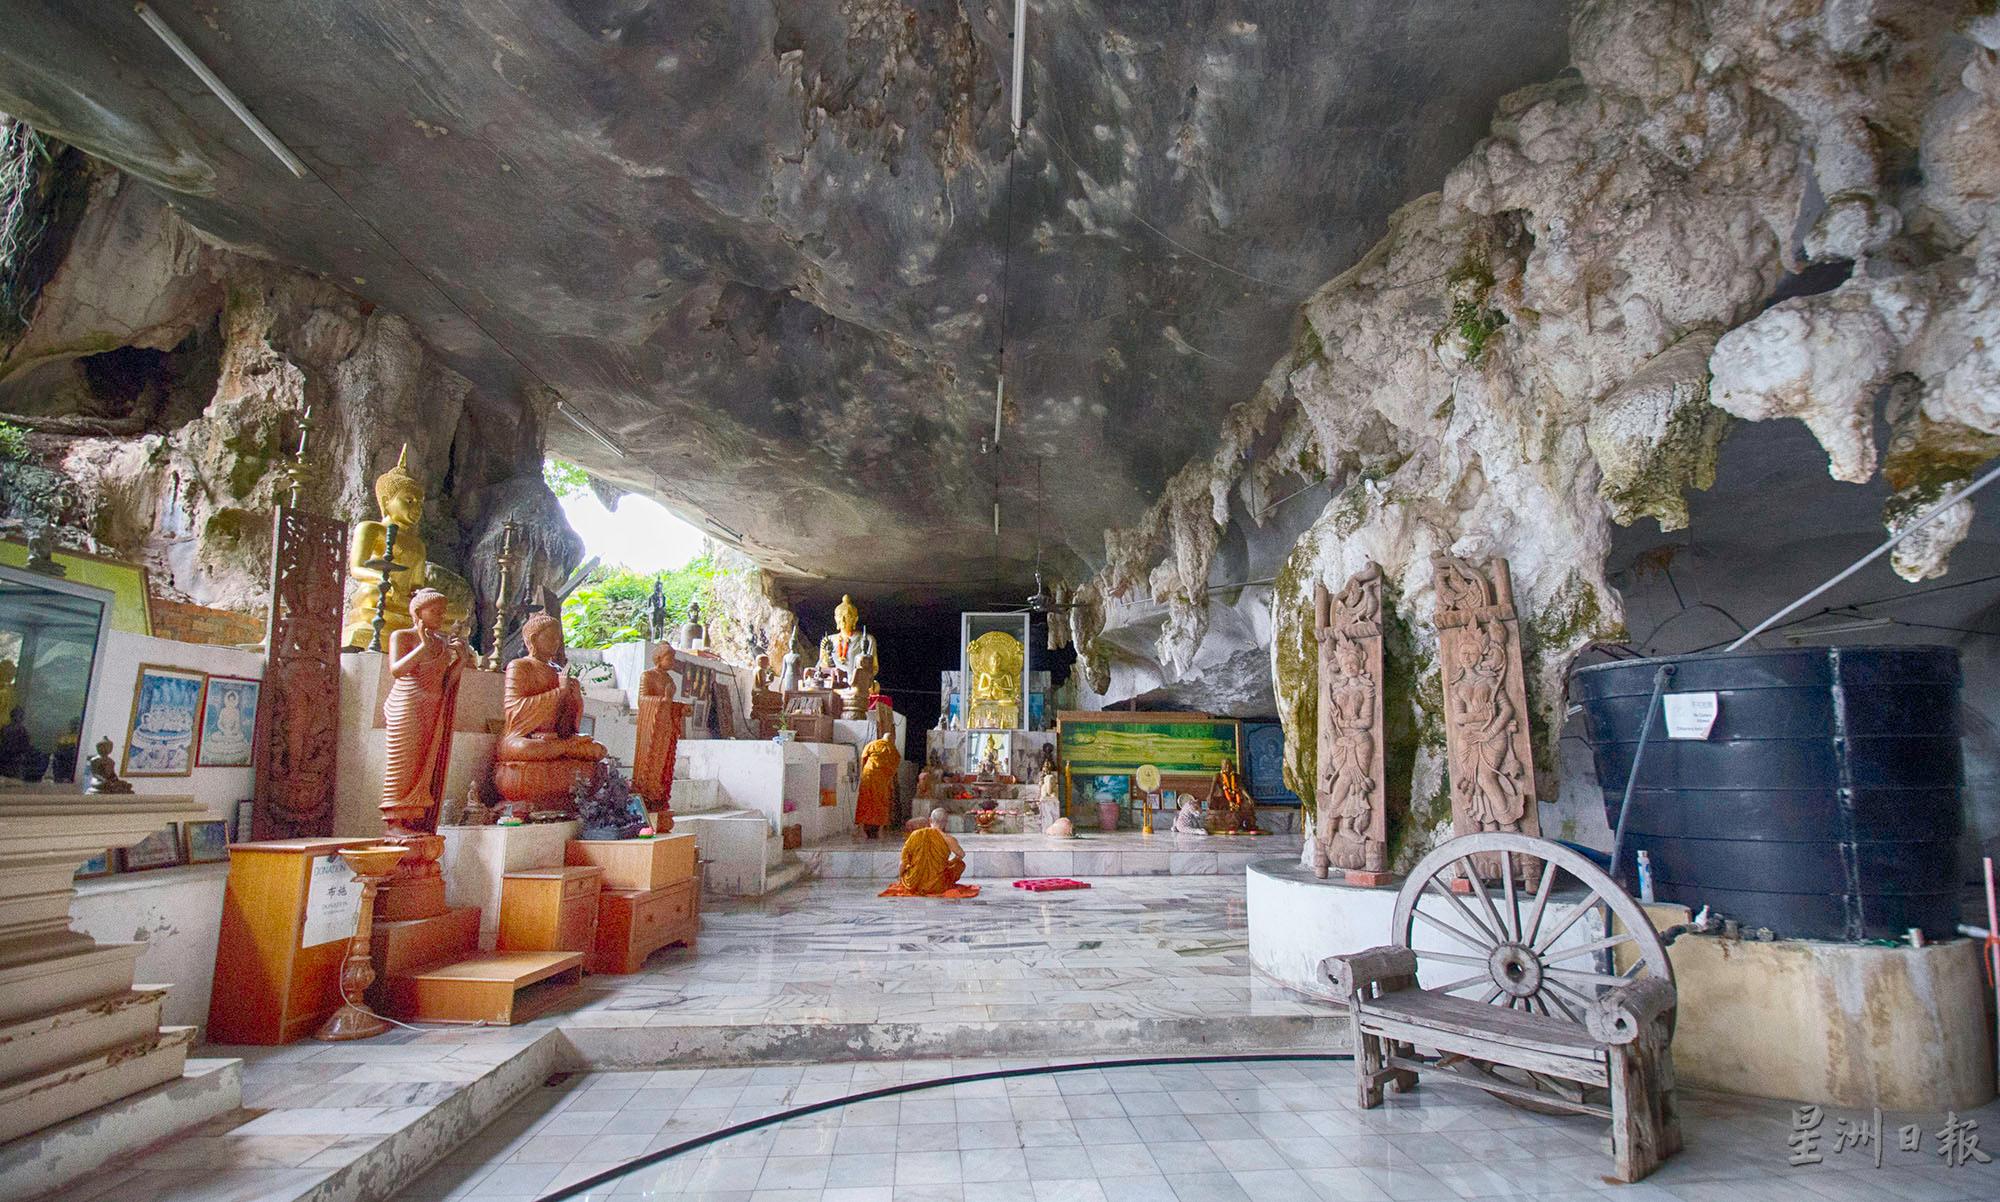 释迦圣法岩是历史悠久的百年洞窟佛教圣地。